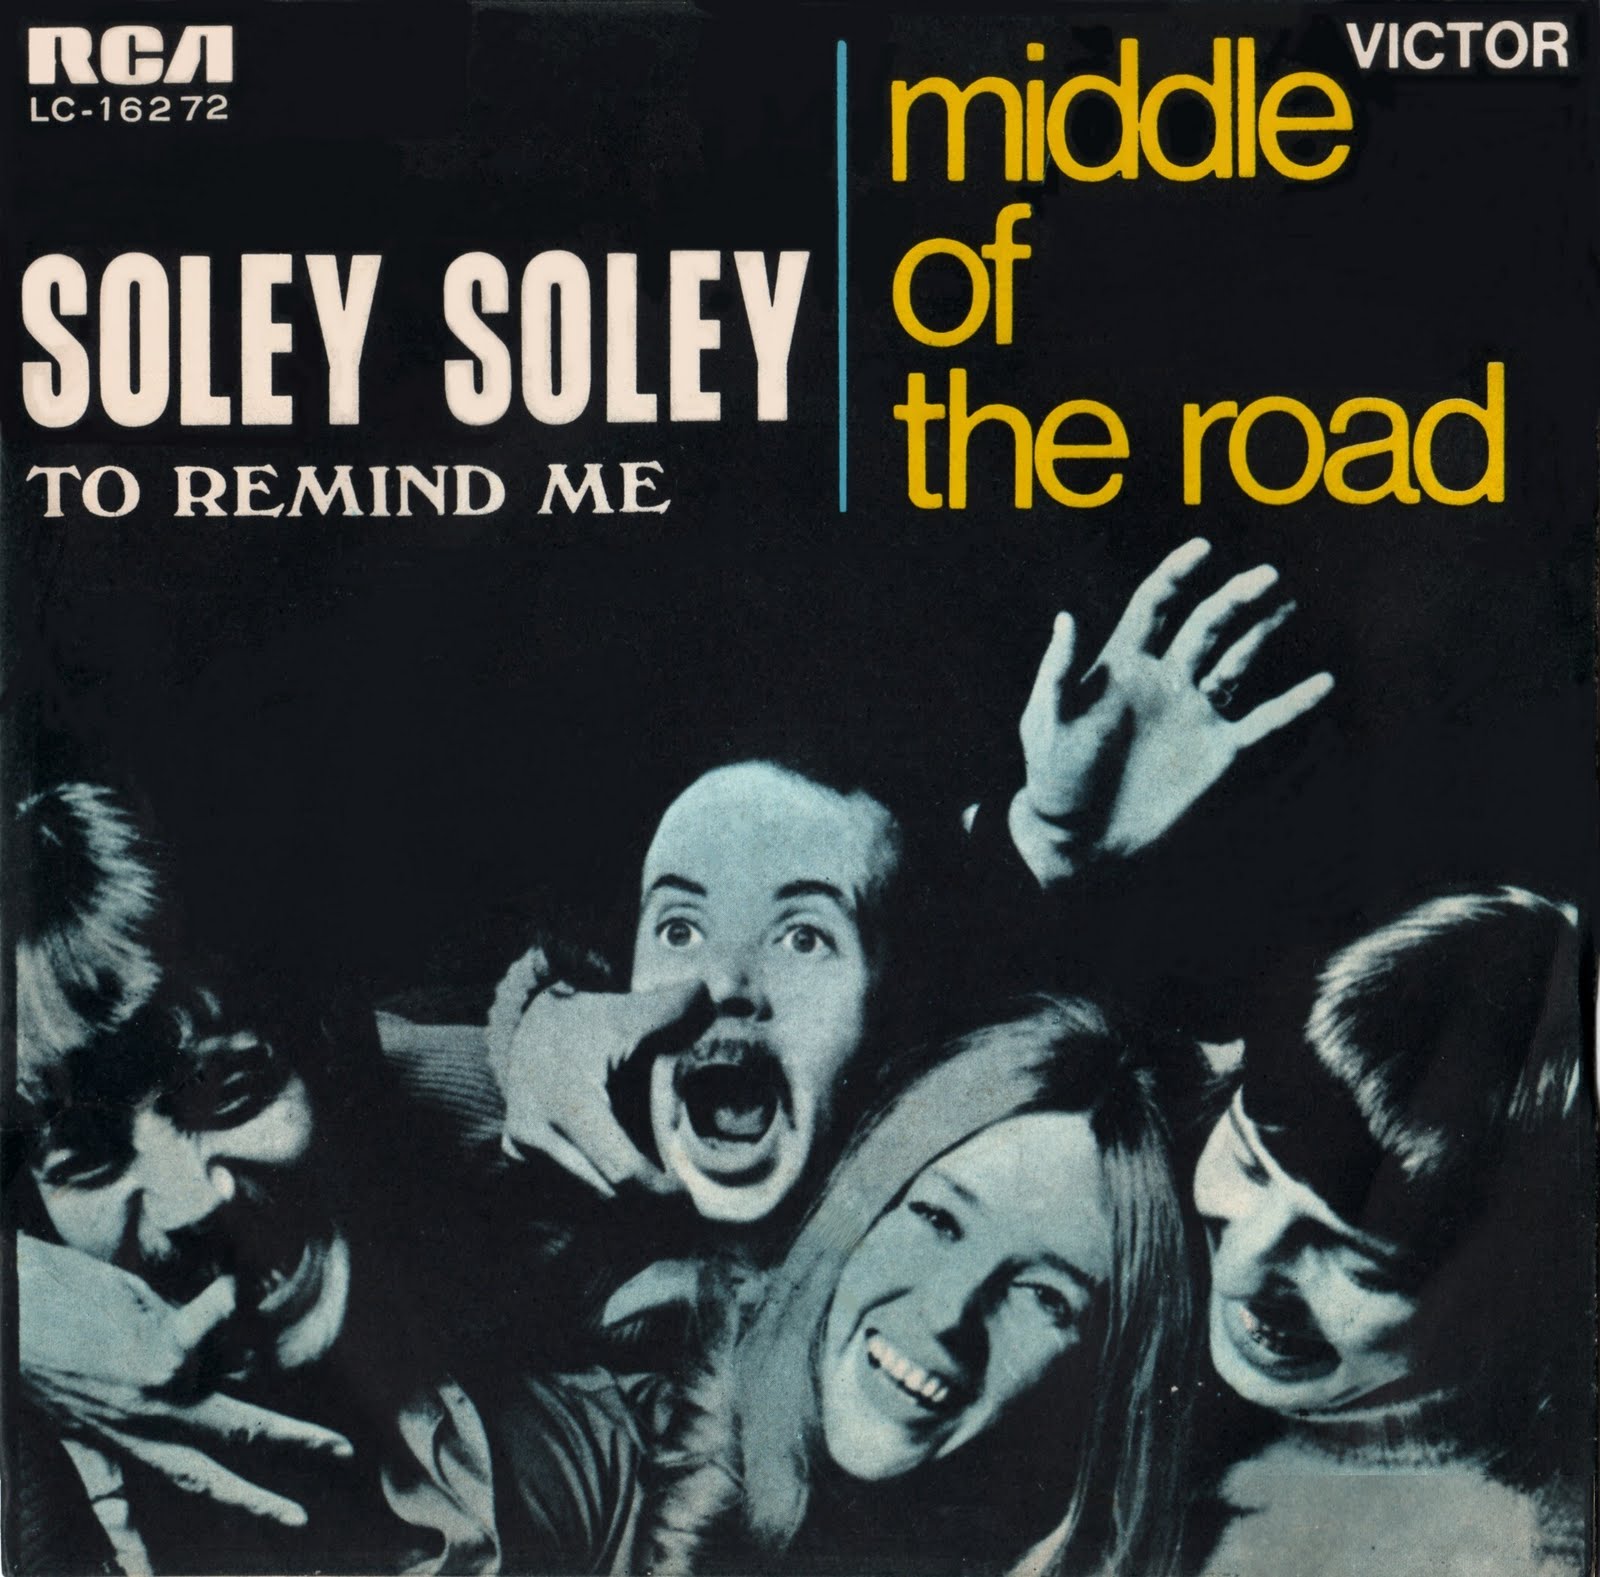 Middle of the road mp3. Middle of the Road 1971. Middle of the Road Салли карр. Middle of the Road Acceleration 1971. Middle of the Road плакат.